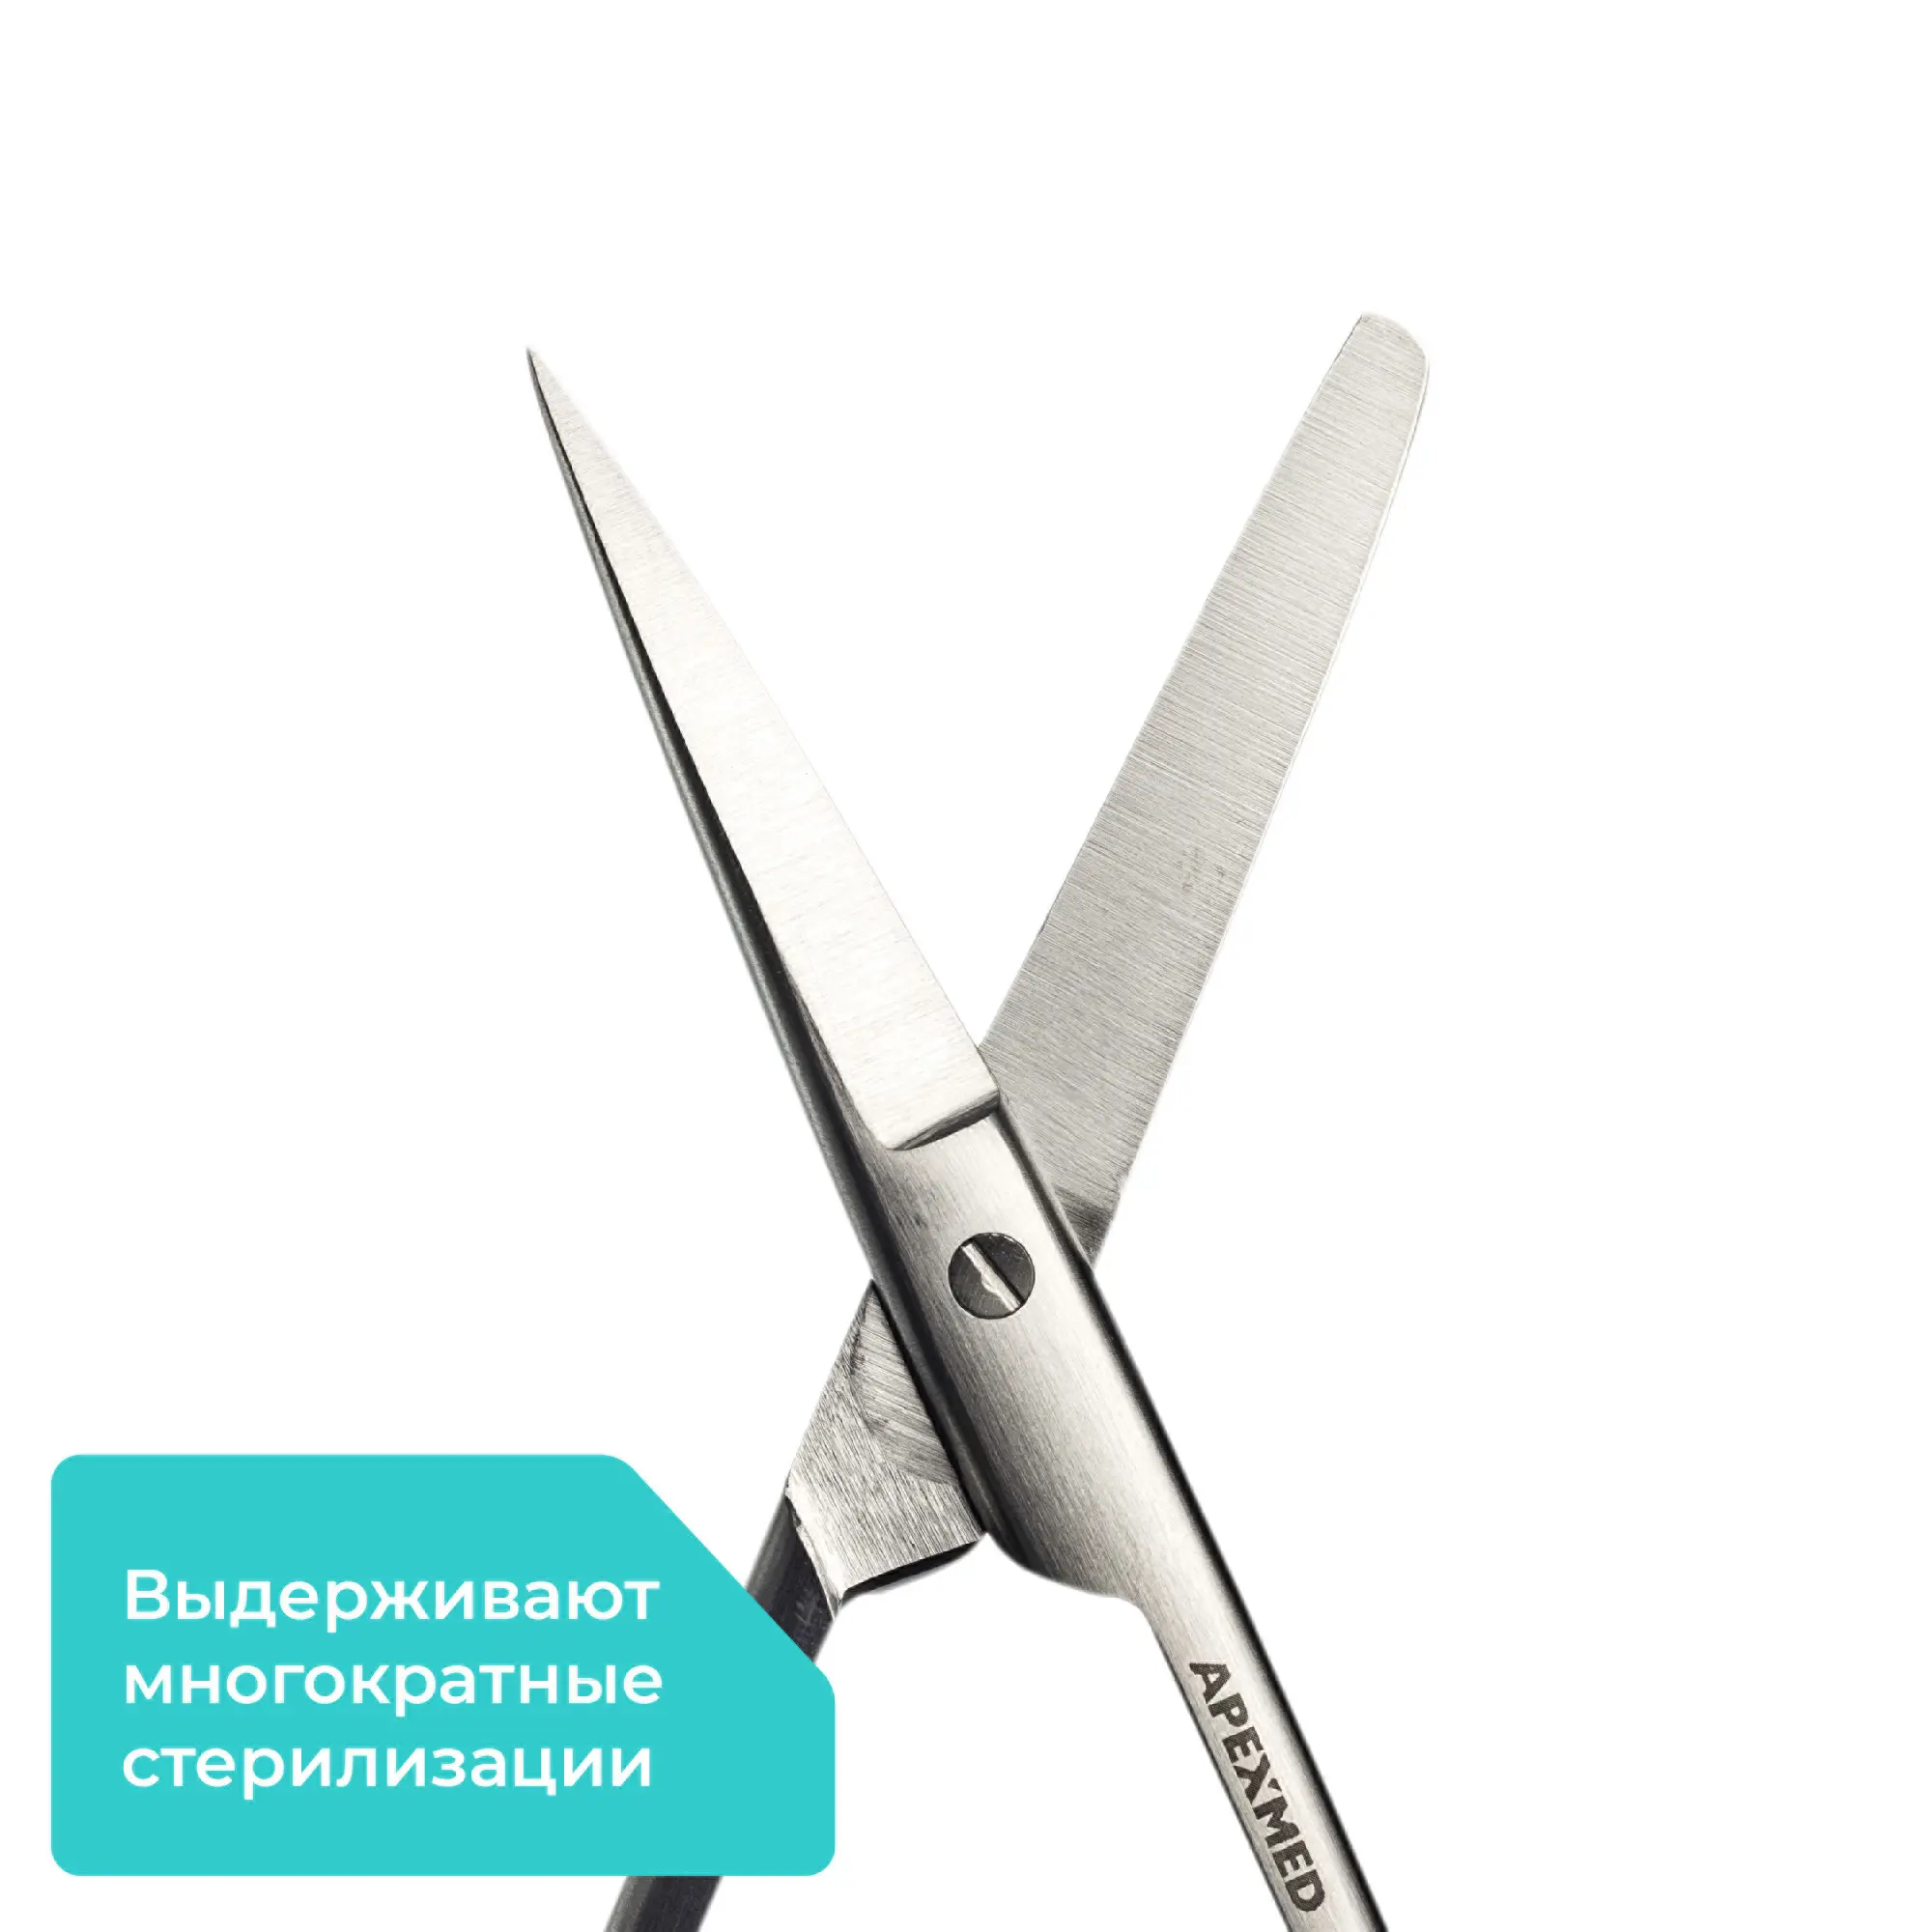 Ножницы хирургические Standard (Стандарт) с одним острым концом, прямые, 145 мм, Apexmed